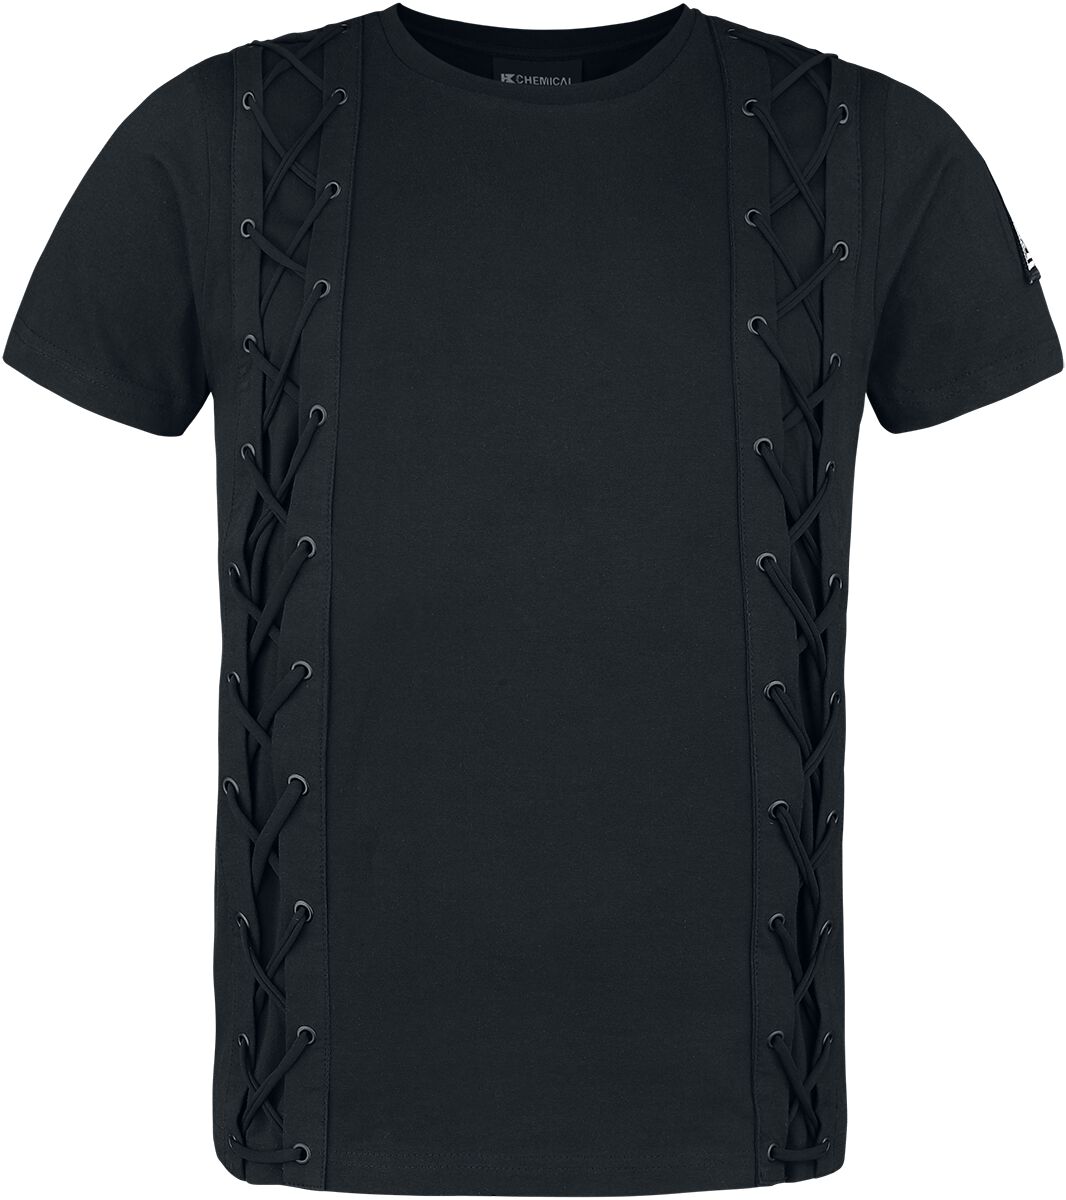 Chemical Black - Gothic T-Shirt - Gunner Top Mens Black - S bis 4XL - für Männer - Größe 3XL - schwarz